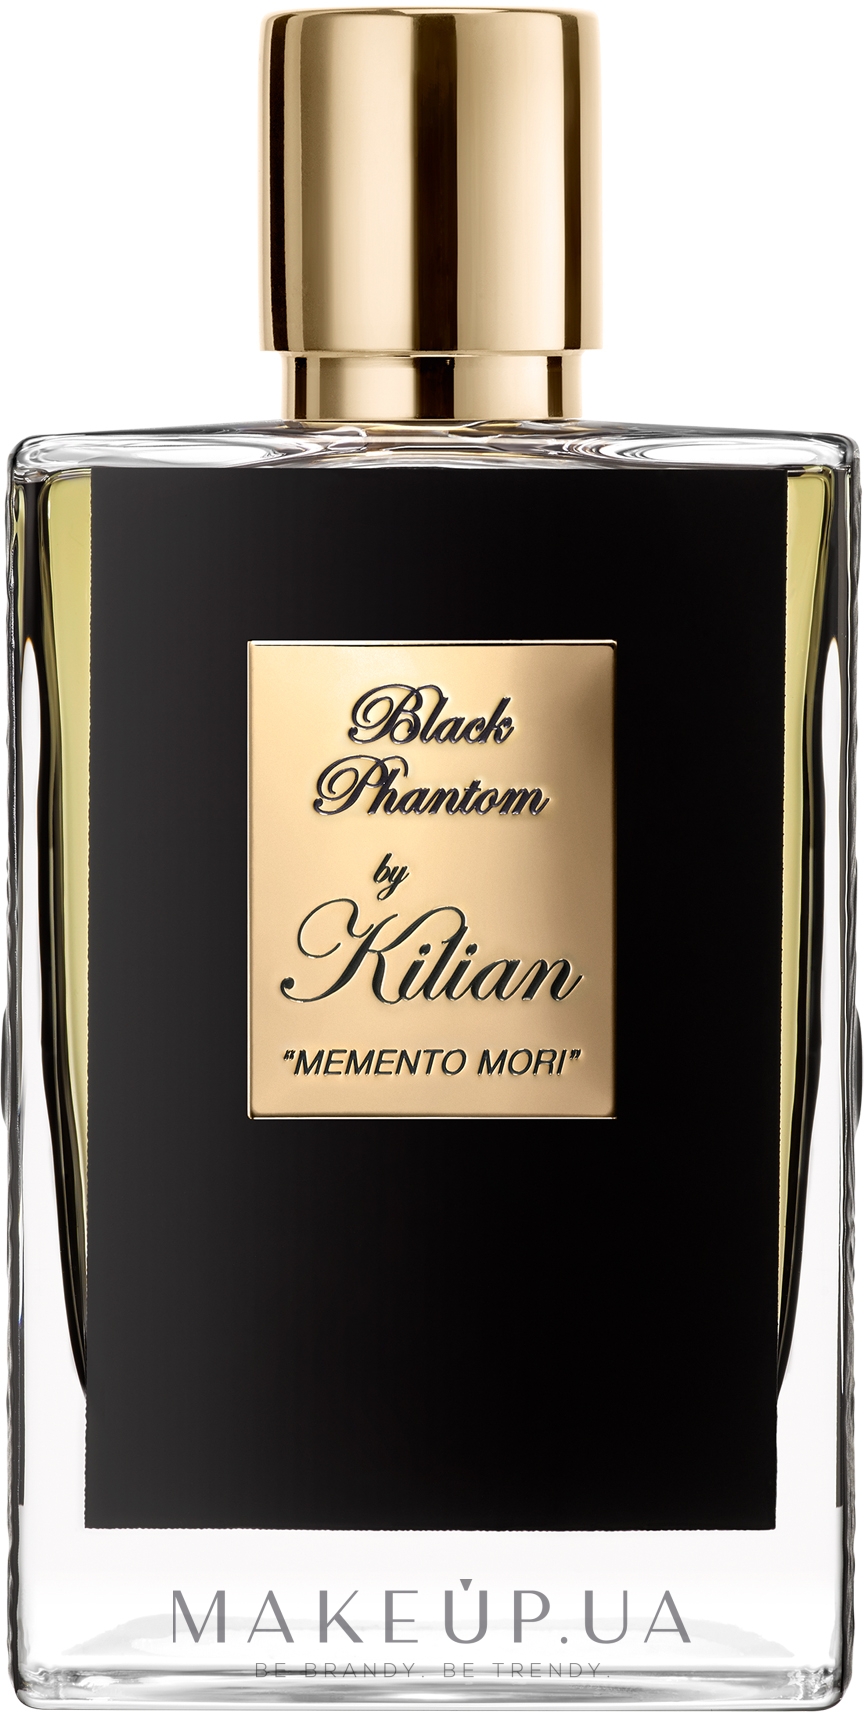 Kilian Paris Black Phantom "Memento Mori" Refillable Spray